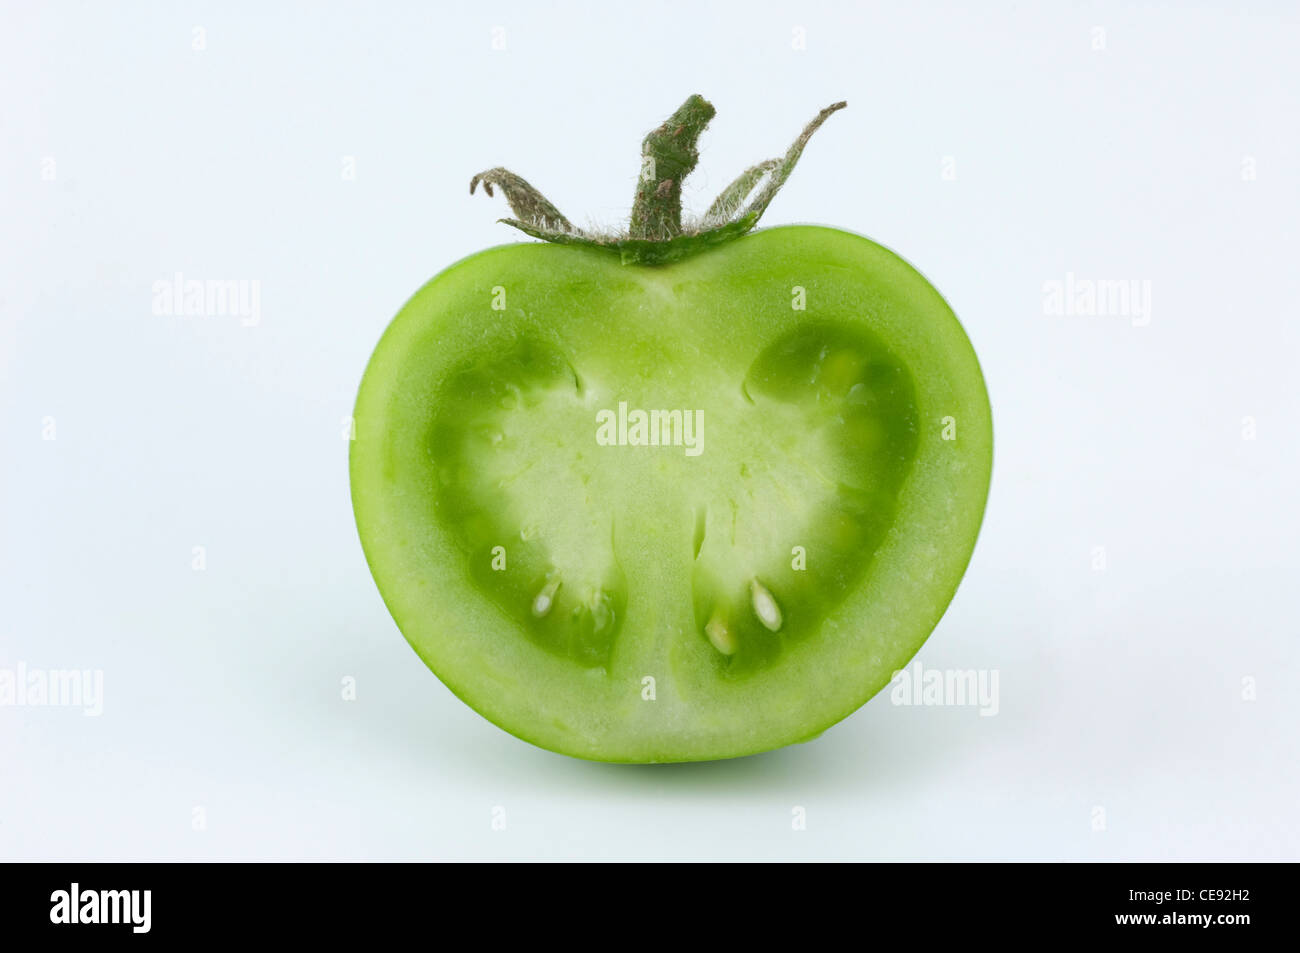 La tomate (Lycopersicon esculentum), coupées en deux les fruits verts. Studio photo sur un fond blanc. Banque D'Images